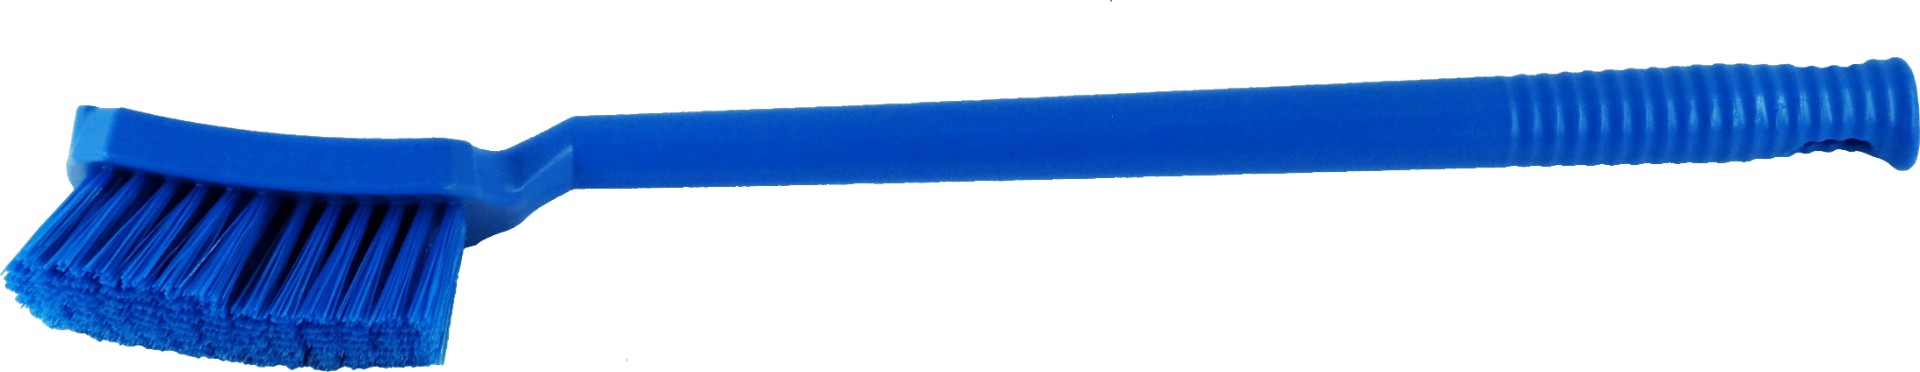 Щетка Schavon с длинной ручкой, жесткая, 500 мм